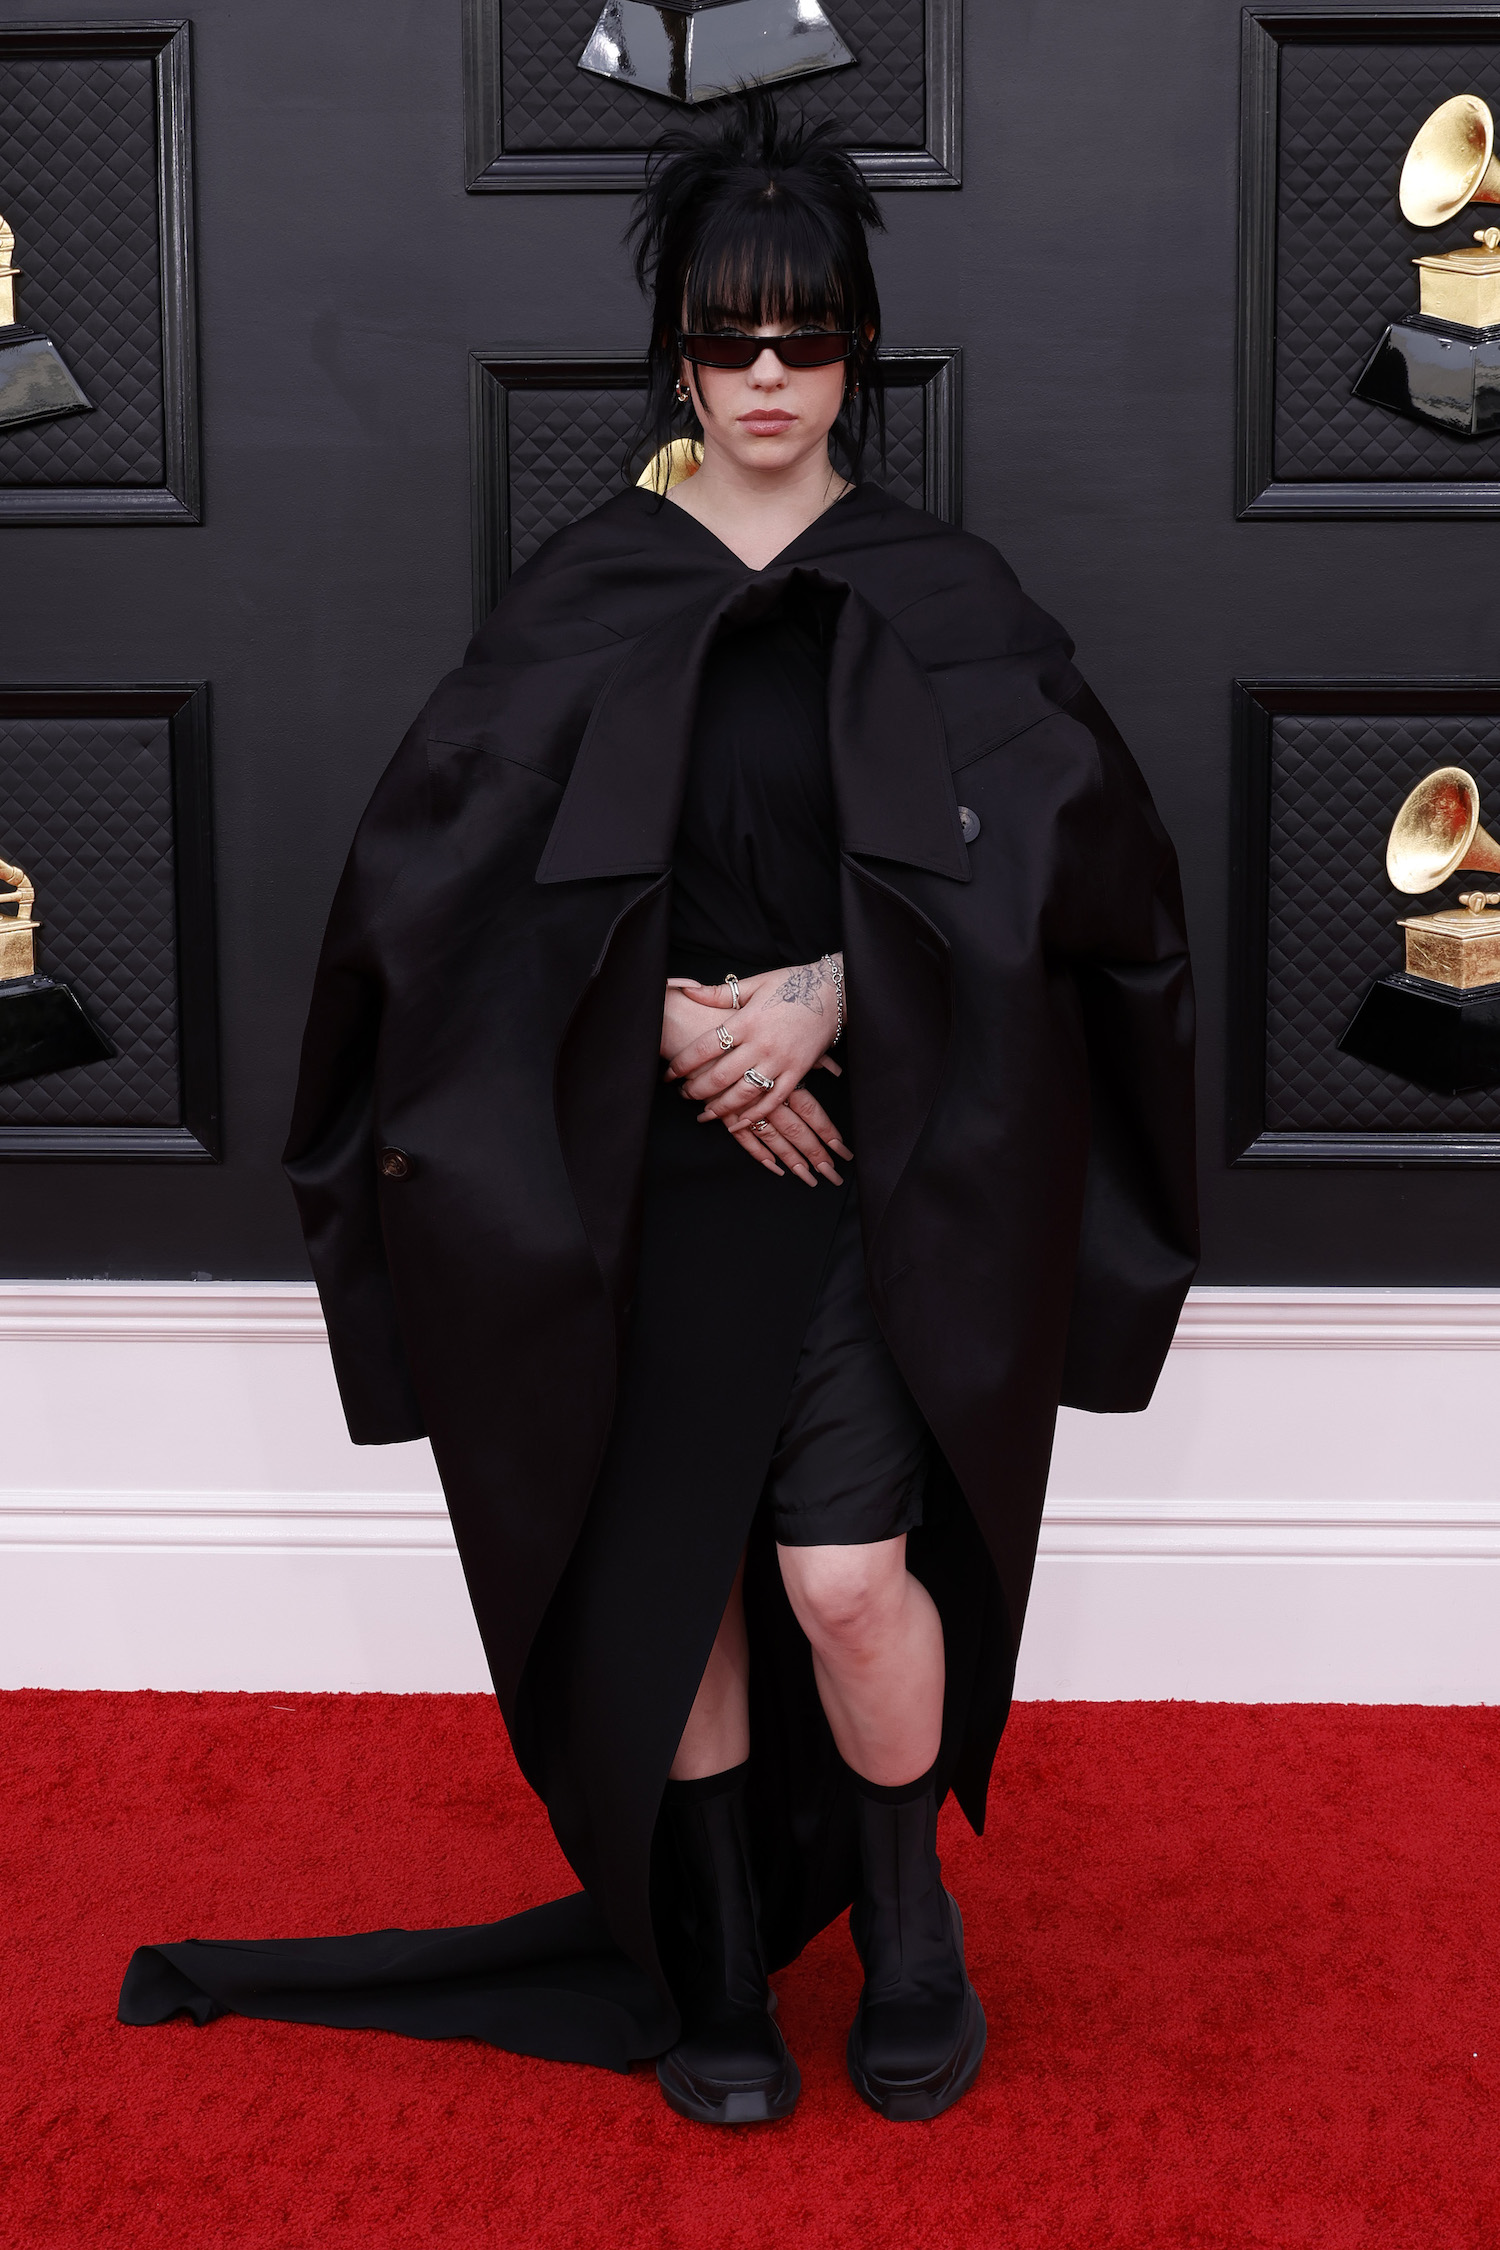 Billie Eilish at the Grammys 2022